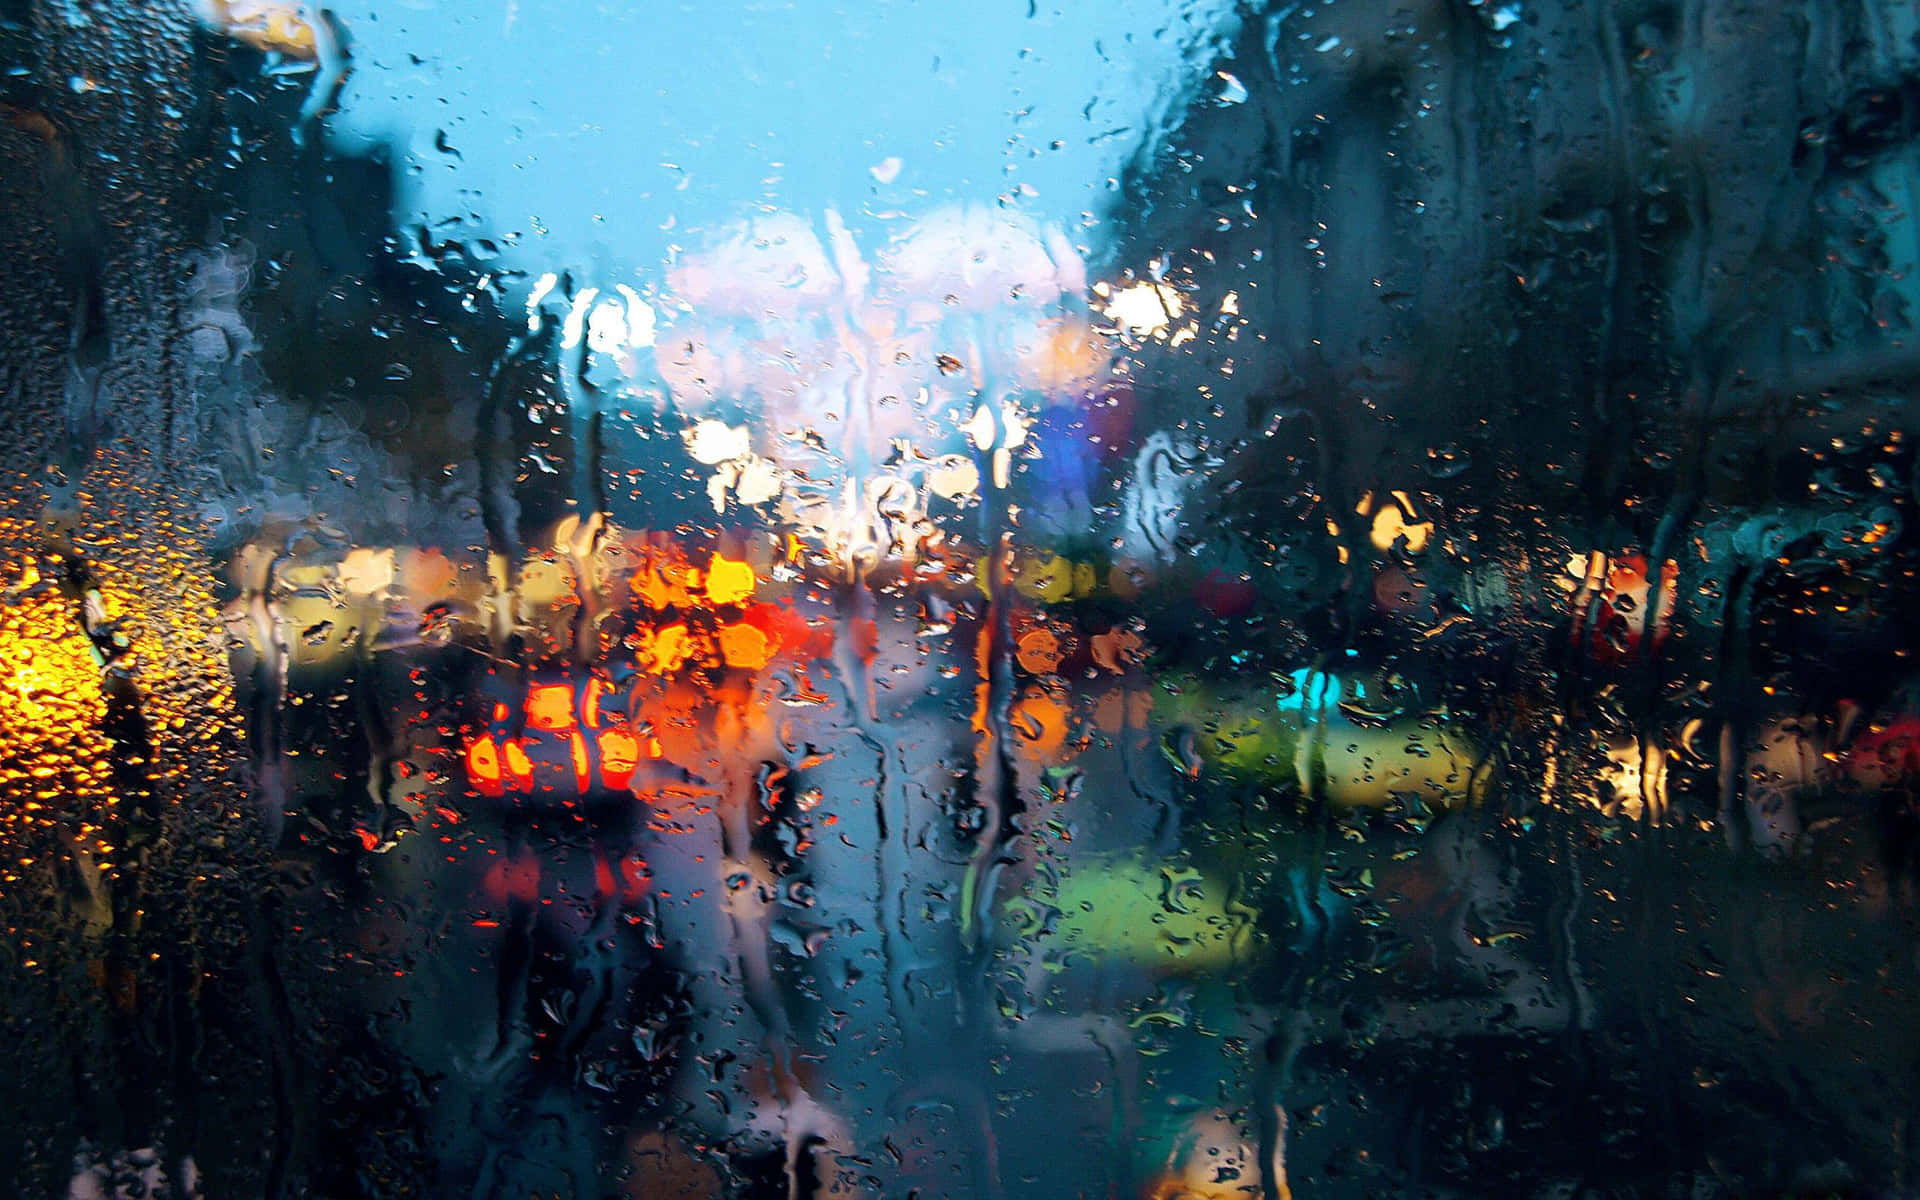 Hình nền mưa: Bạn muốn tìm kiếm hình nền về mưa để thay đổi không khí cho điện thoại, máy tính… của mình? Hãy truy cập vào chúng tôi để tìm thấy những bức ảnh đẹp và lãng mạn nhất về mưa, giúp cho màn hình của bạn trở nên thú vị và hấp dẫn hơn.